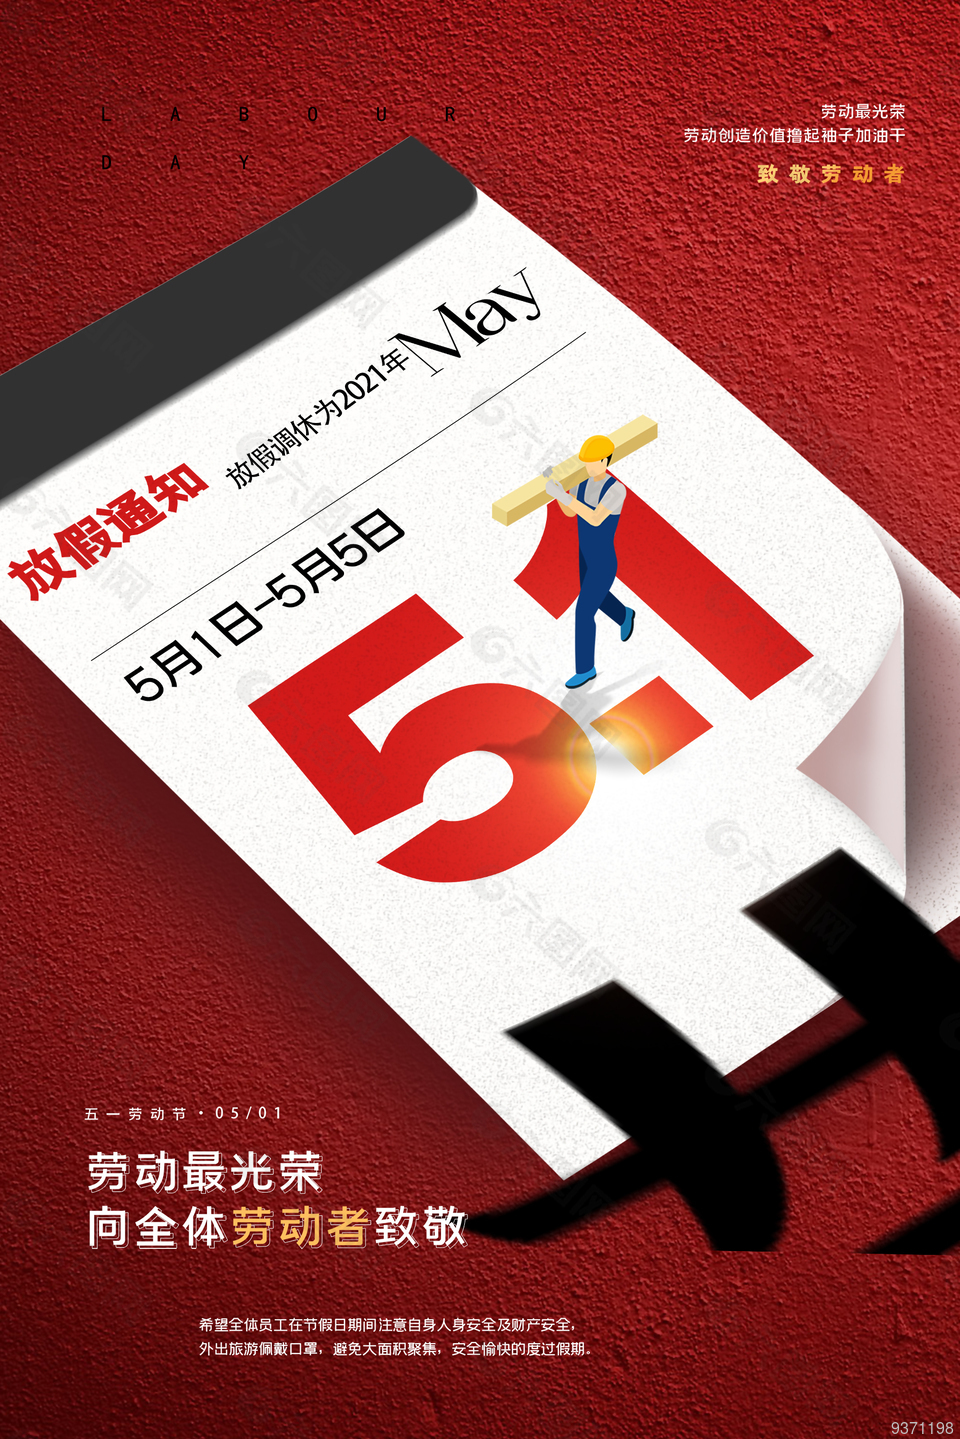 5.1劳动节最新海报设计